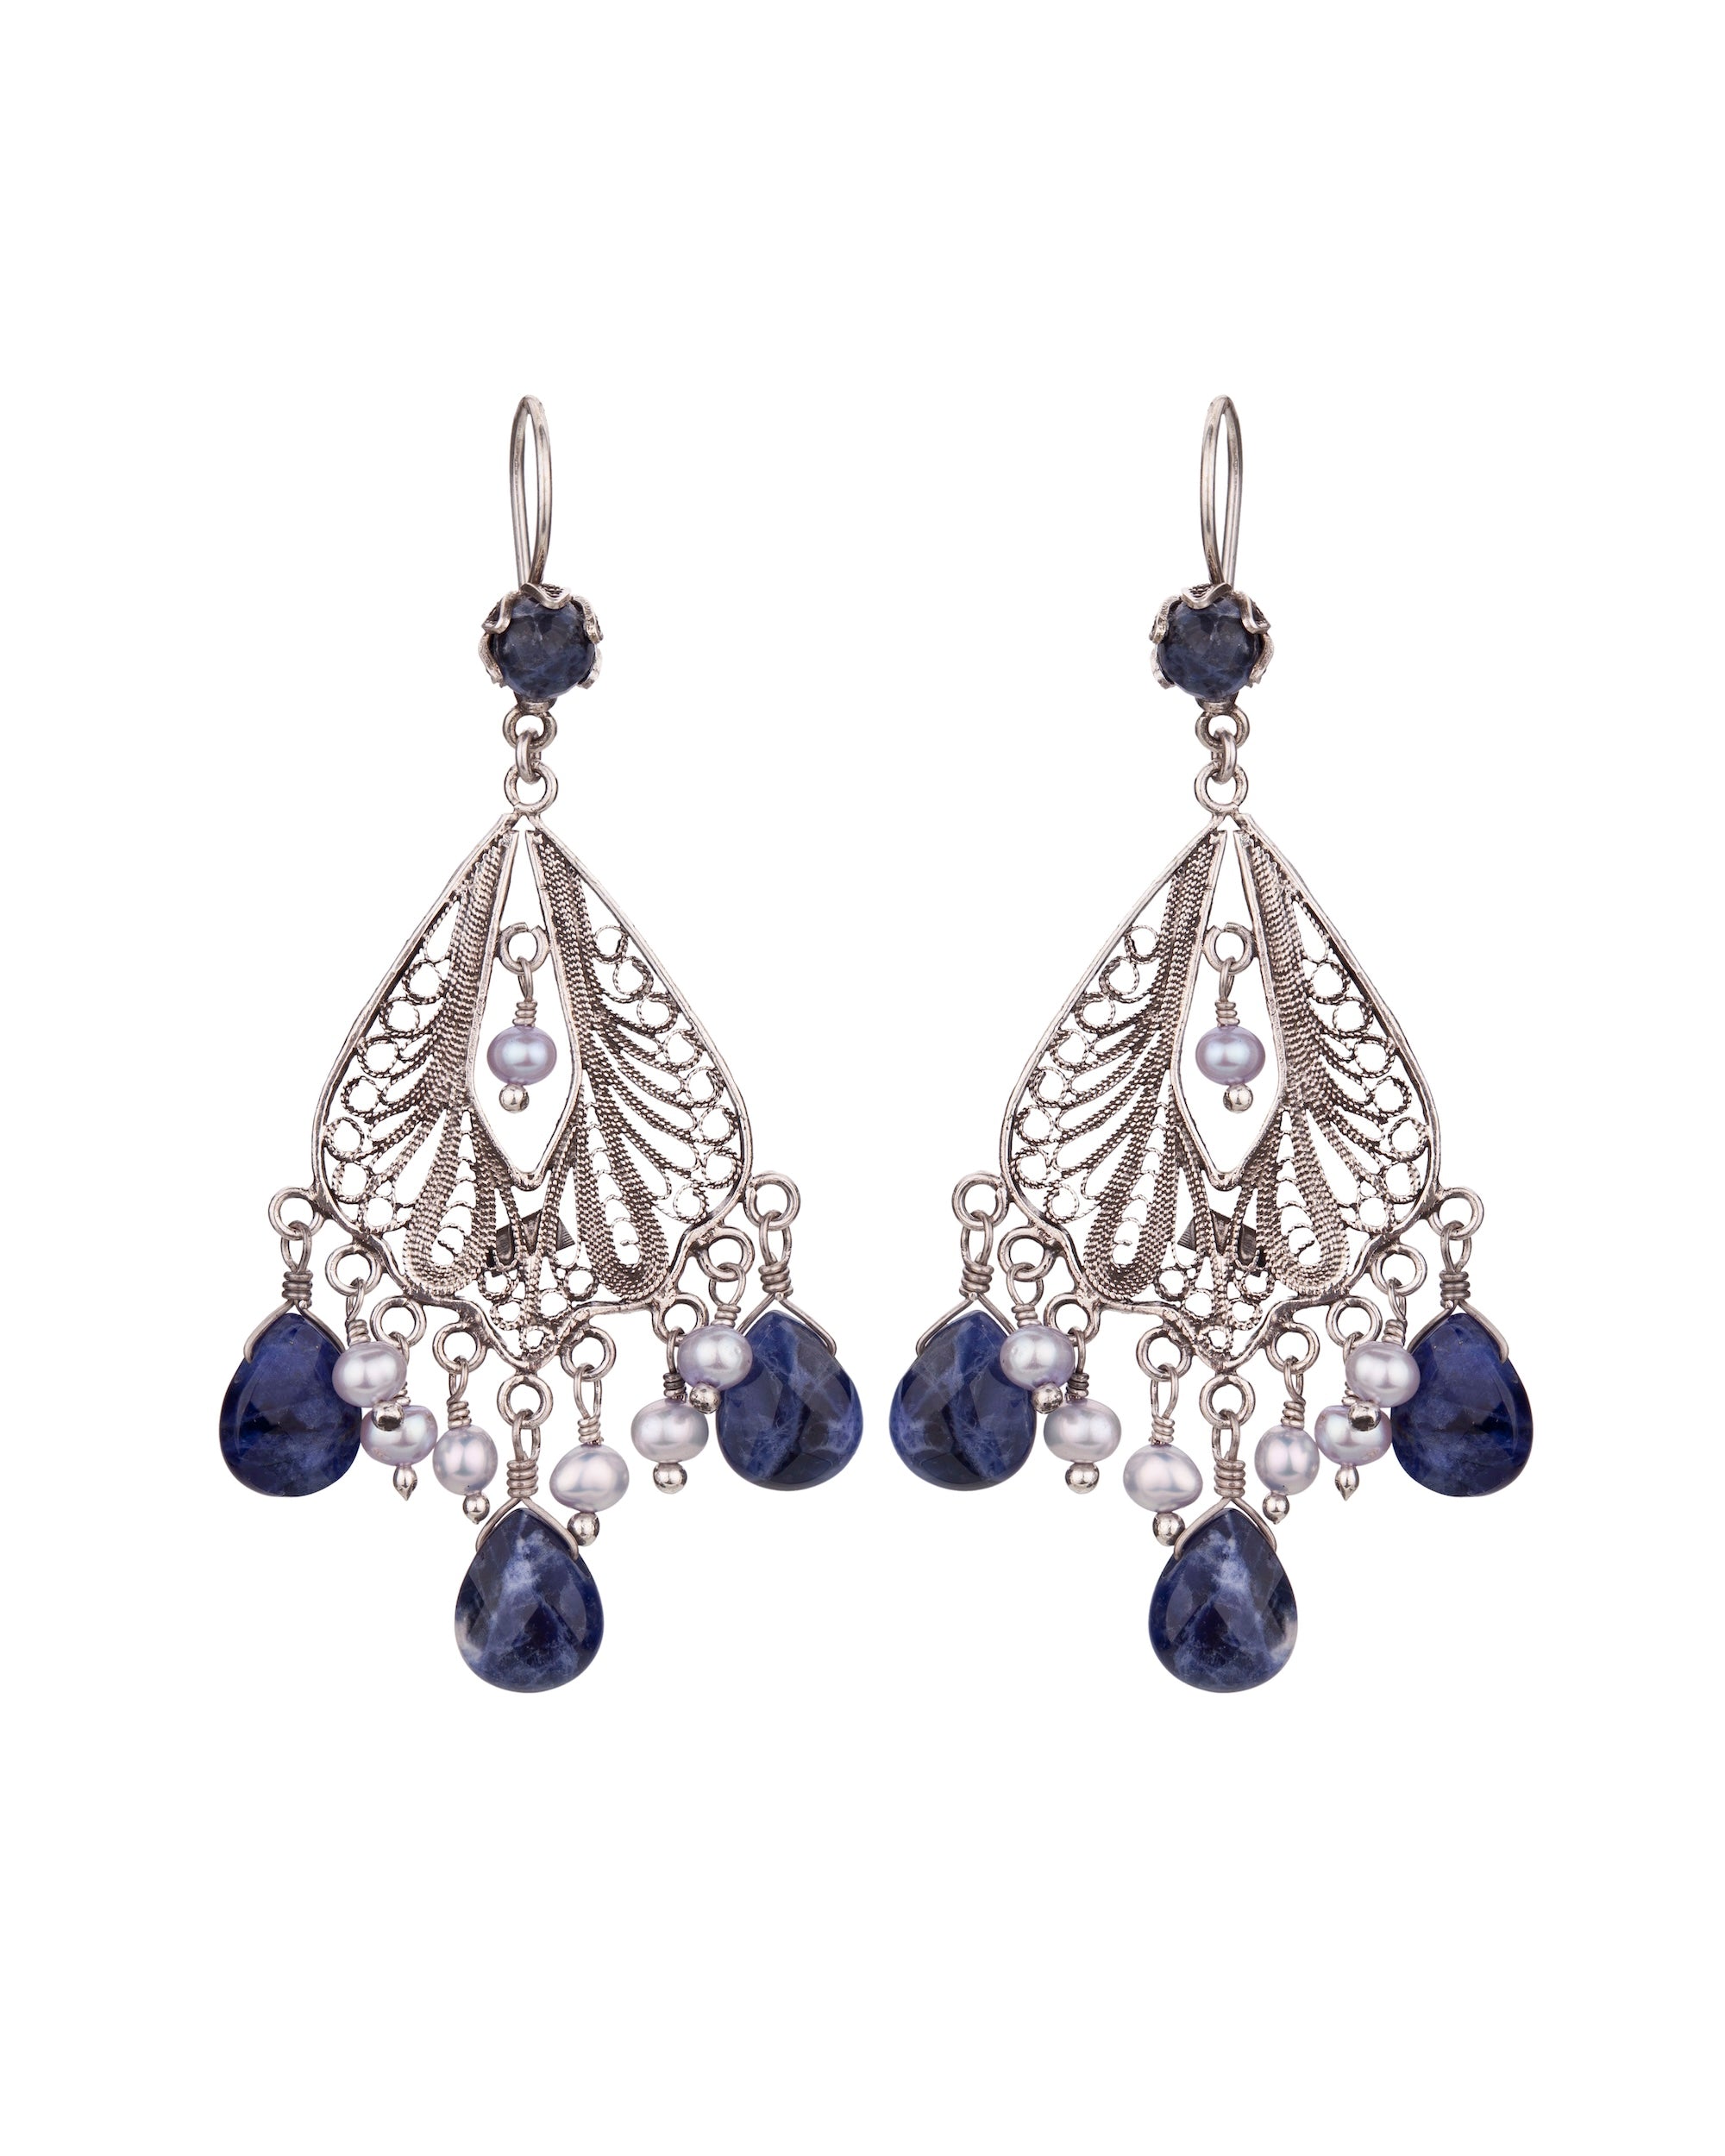 Boucles d'oreilles Chandelier Manor - Sodalite et Perles Bleu Glace ✿ 